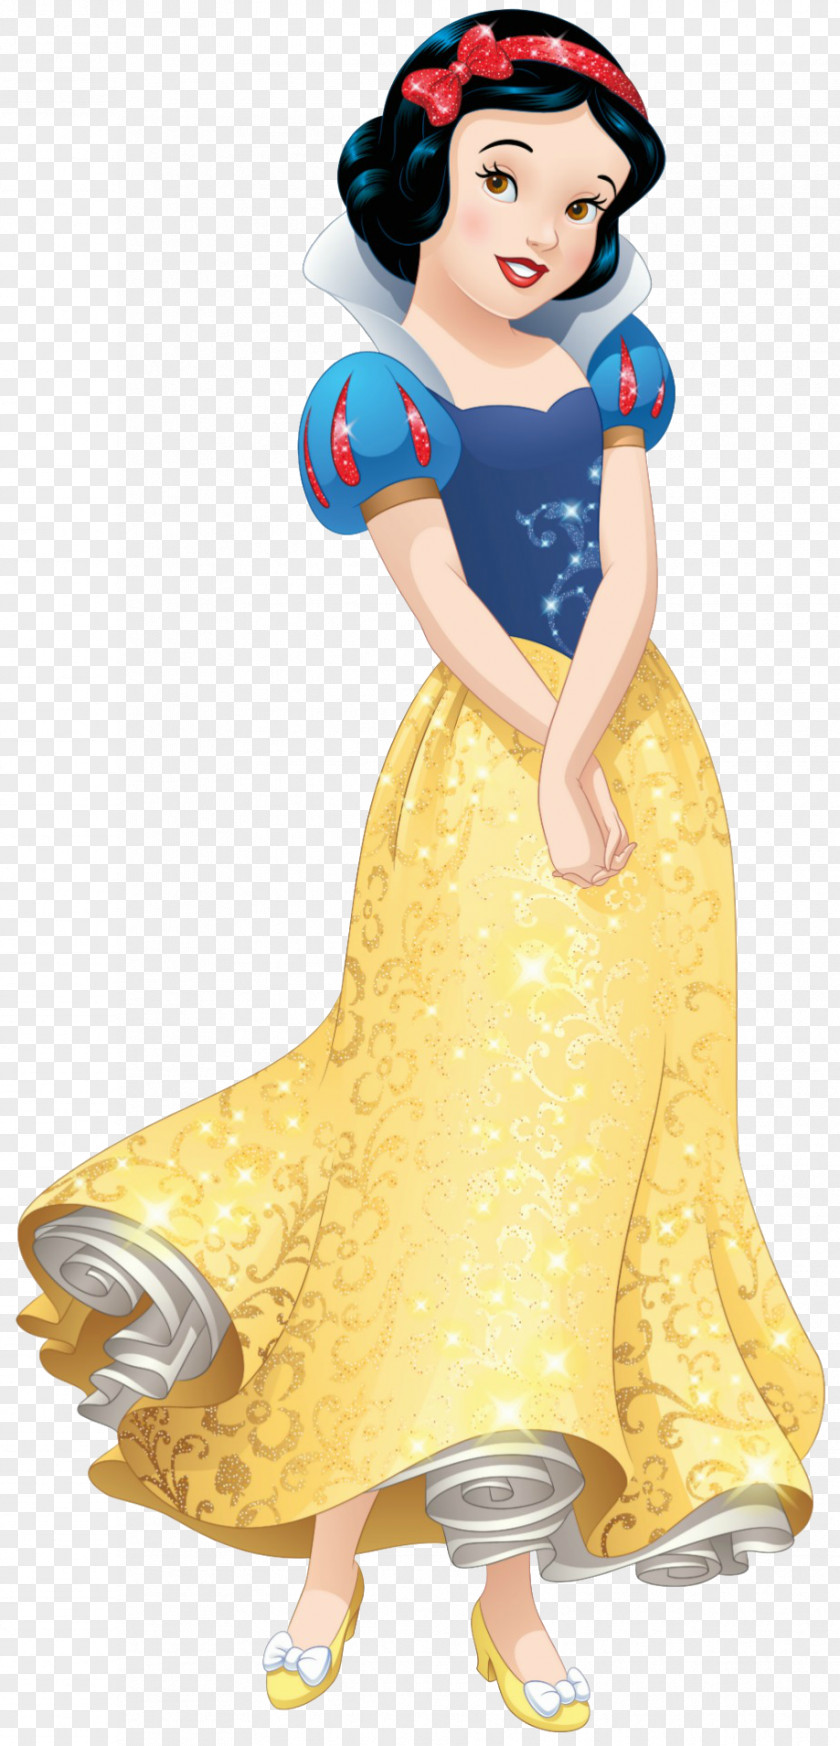 Snow White Ariel Disney Princess And The Seven Dwarfs Rapunzel Belle PNG